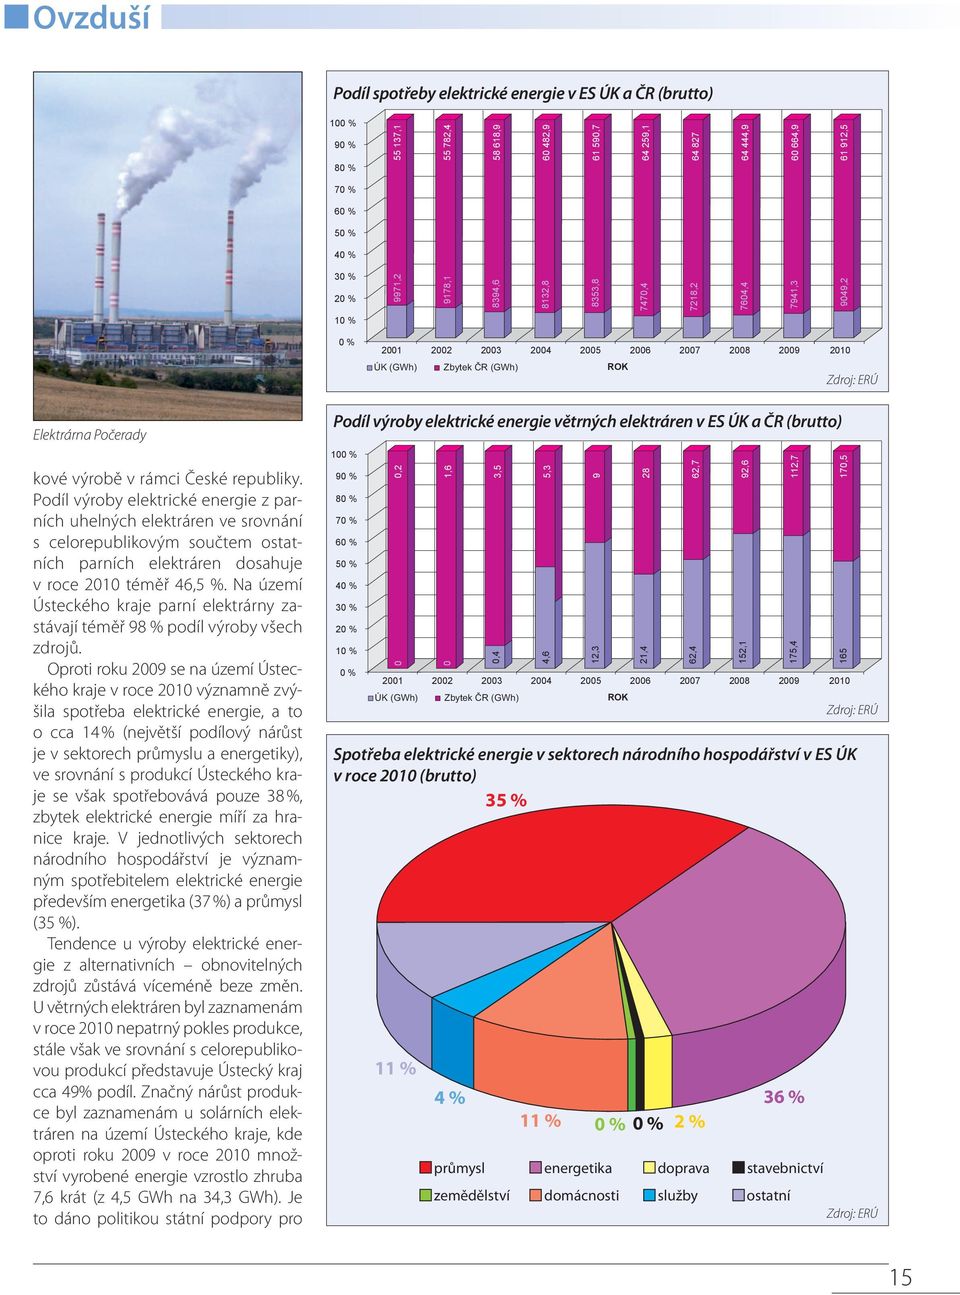 Podíl výroby elektrické energie z parních uhelných elektráren ve srovnání s celorepublikovým součtem ostatních parních elektráren dosahuje v roce 21 téměř 46,5 %.